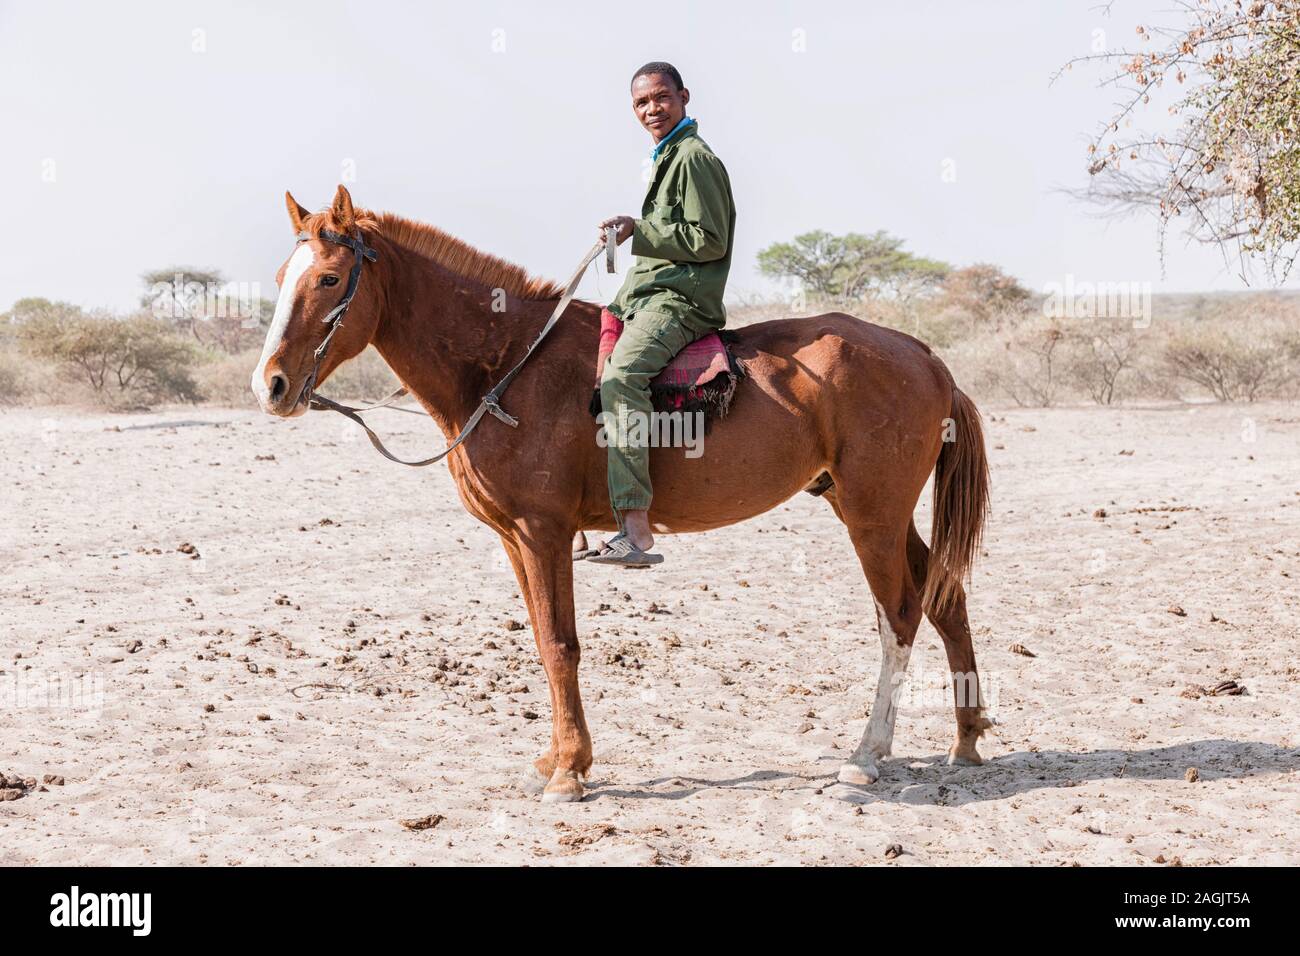 Uomo a cavallo al villaggio locale Zere, deserto Kalahari vicino Rakops, Botswana, Africa Foto Stock